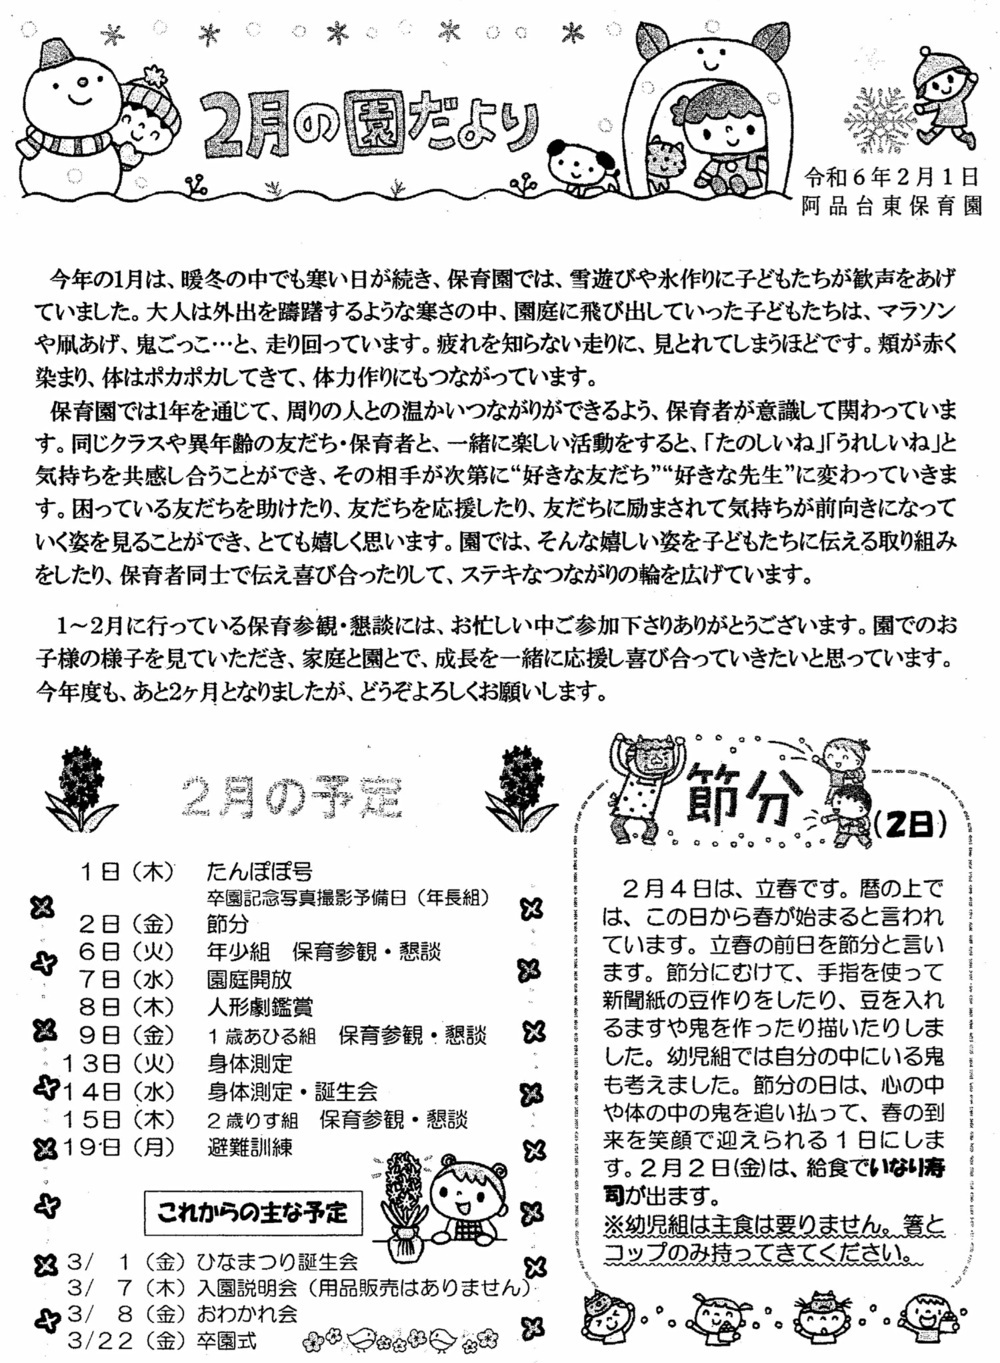 Boletim de março da Escola Infantil Ajintai Higashi Emitido em 2º de março de 6